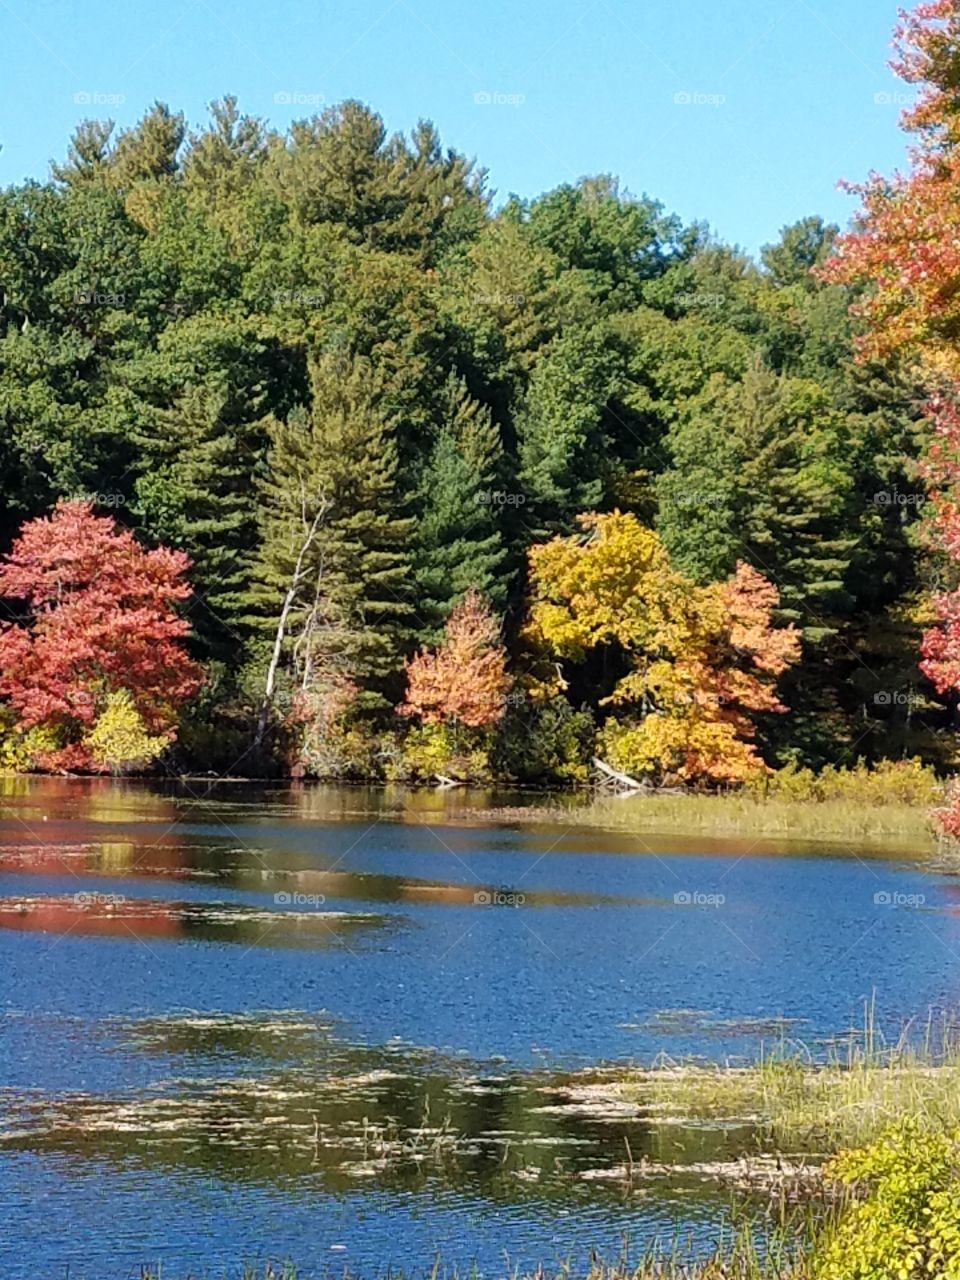 View of a idyllic lake